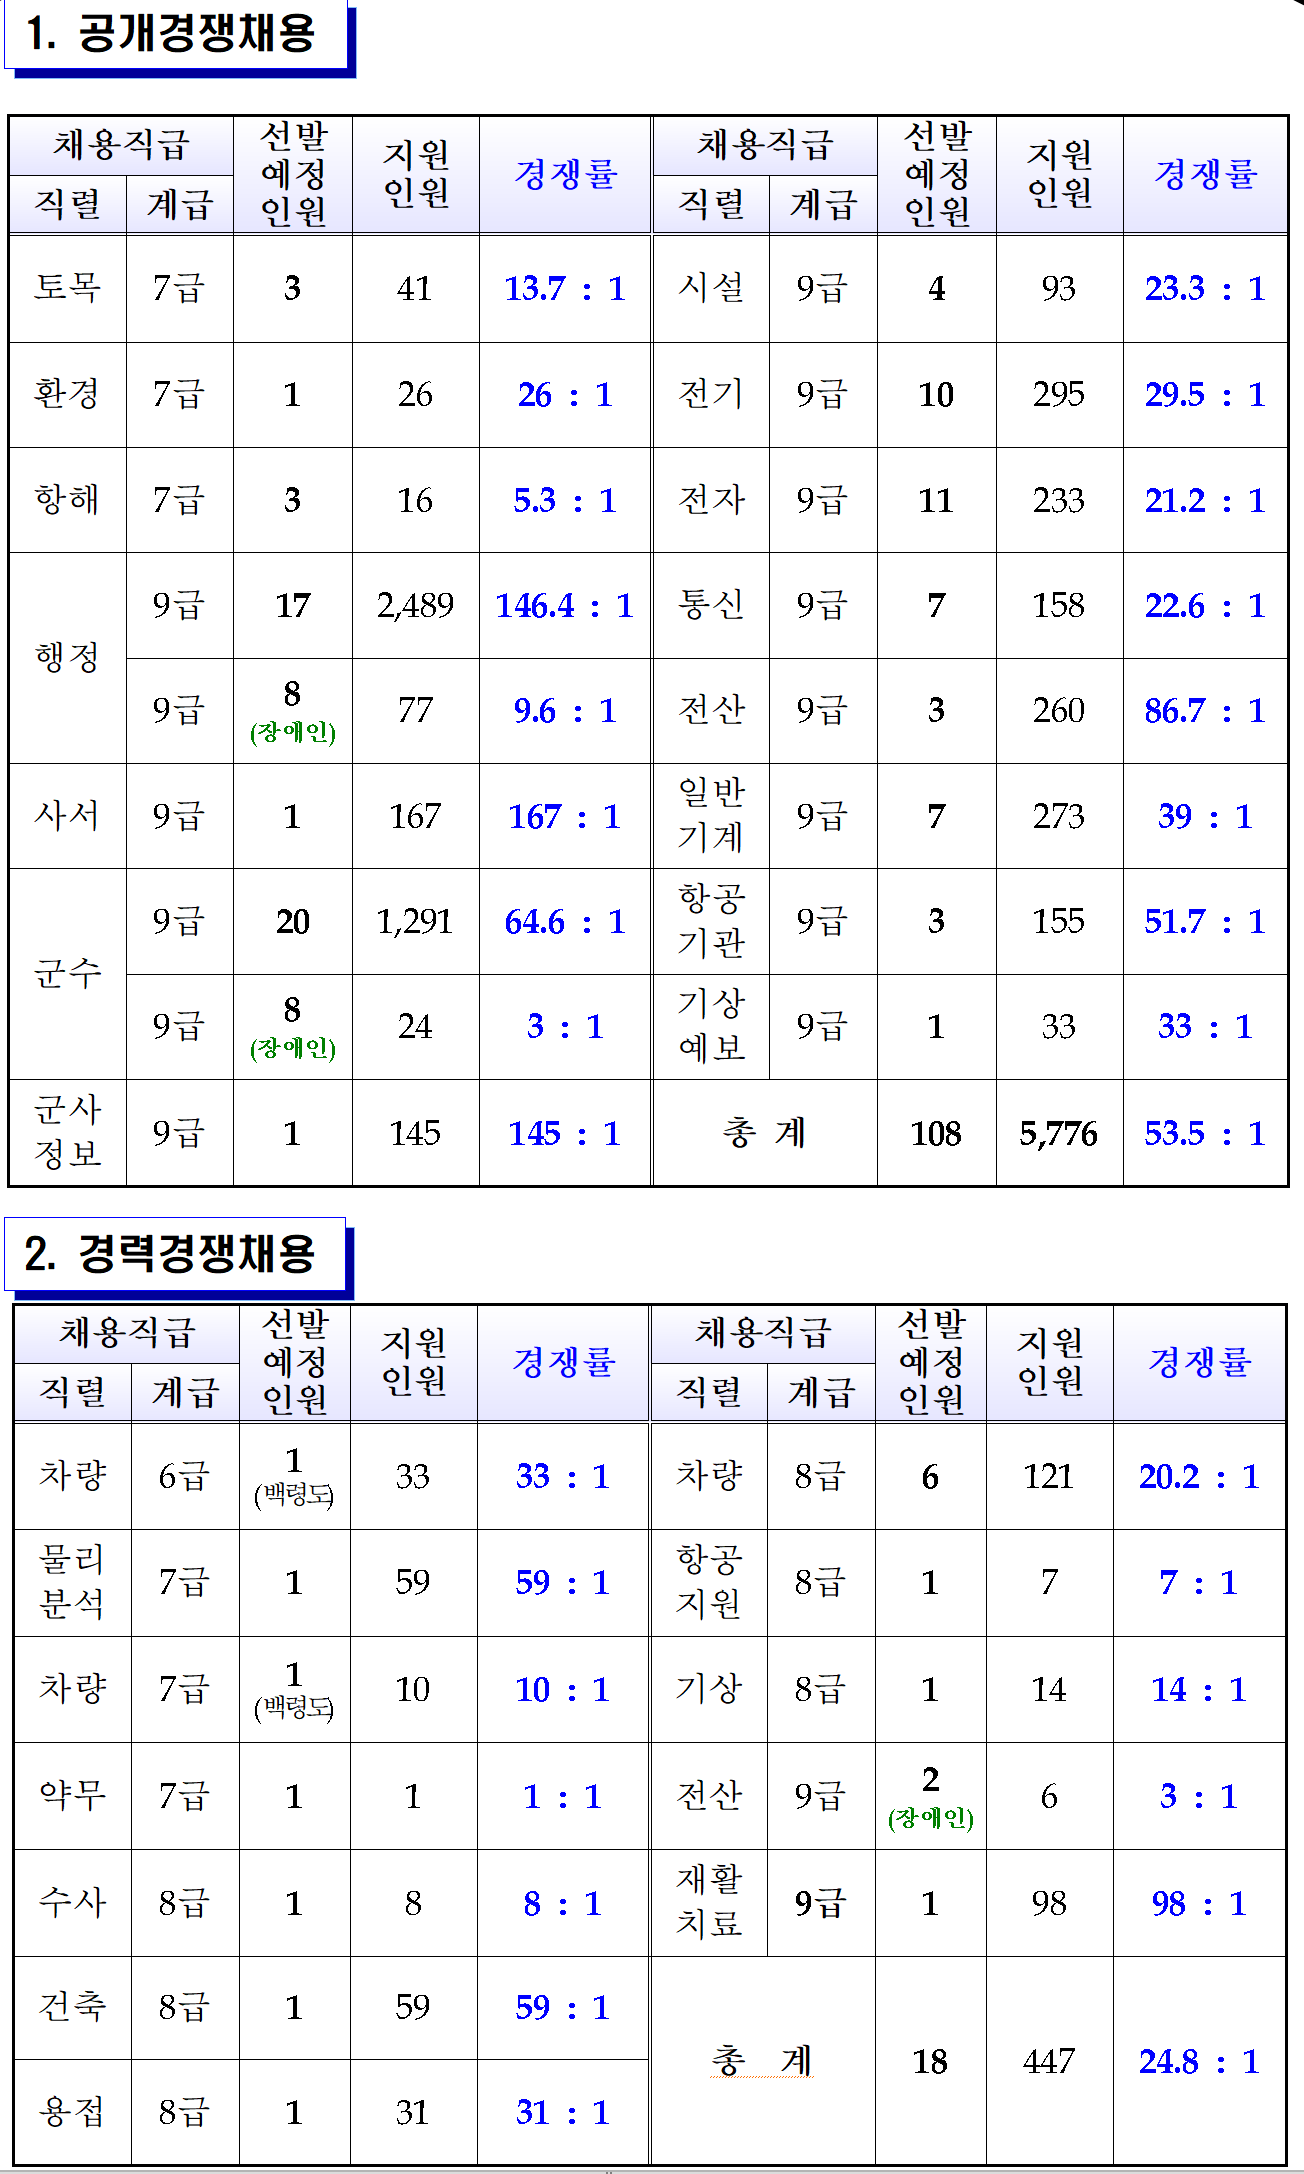 2015~2019년 공군 군무원 직렬 경쟁률 확인